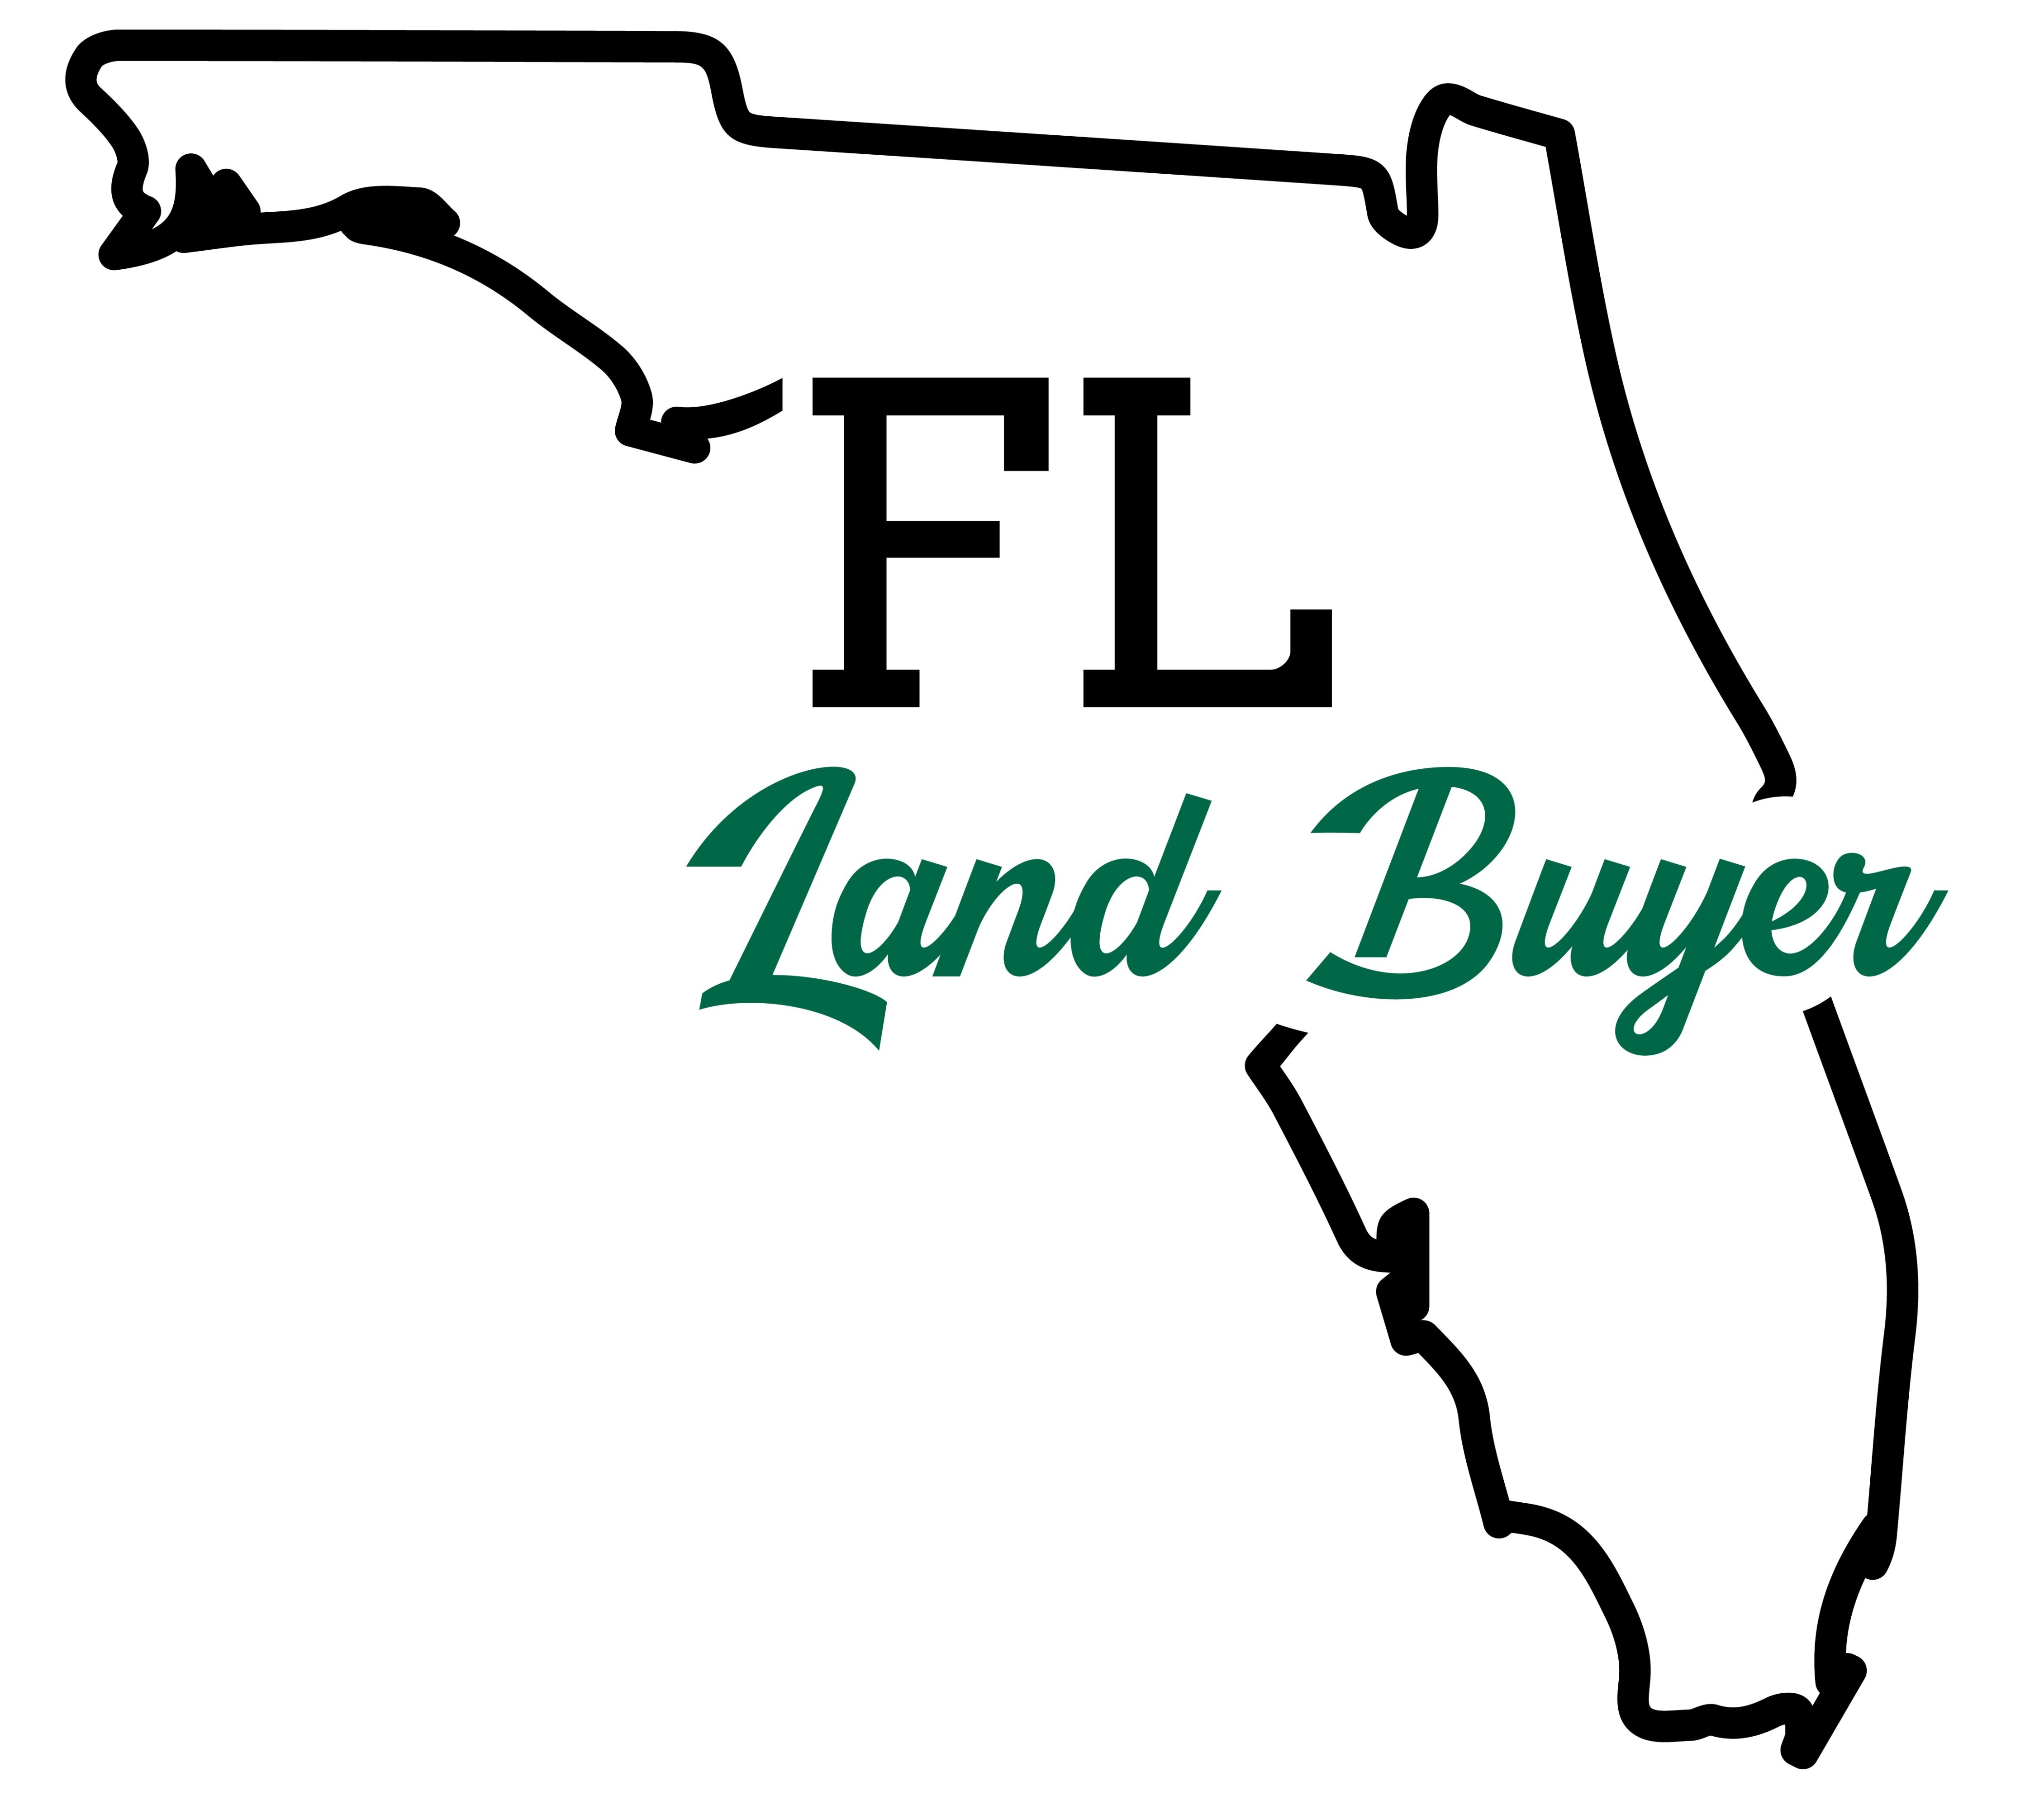 Florida Land Buyer logo